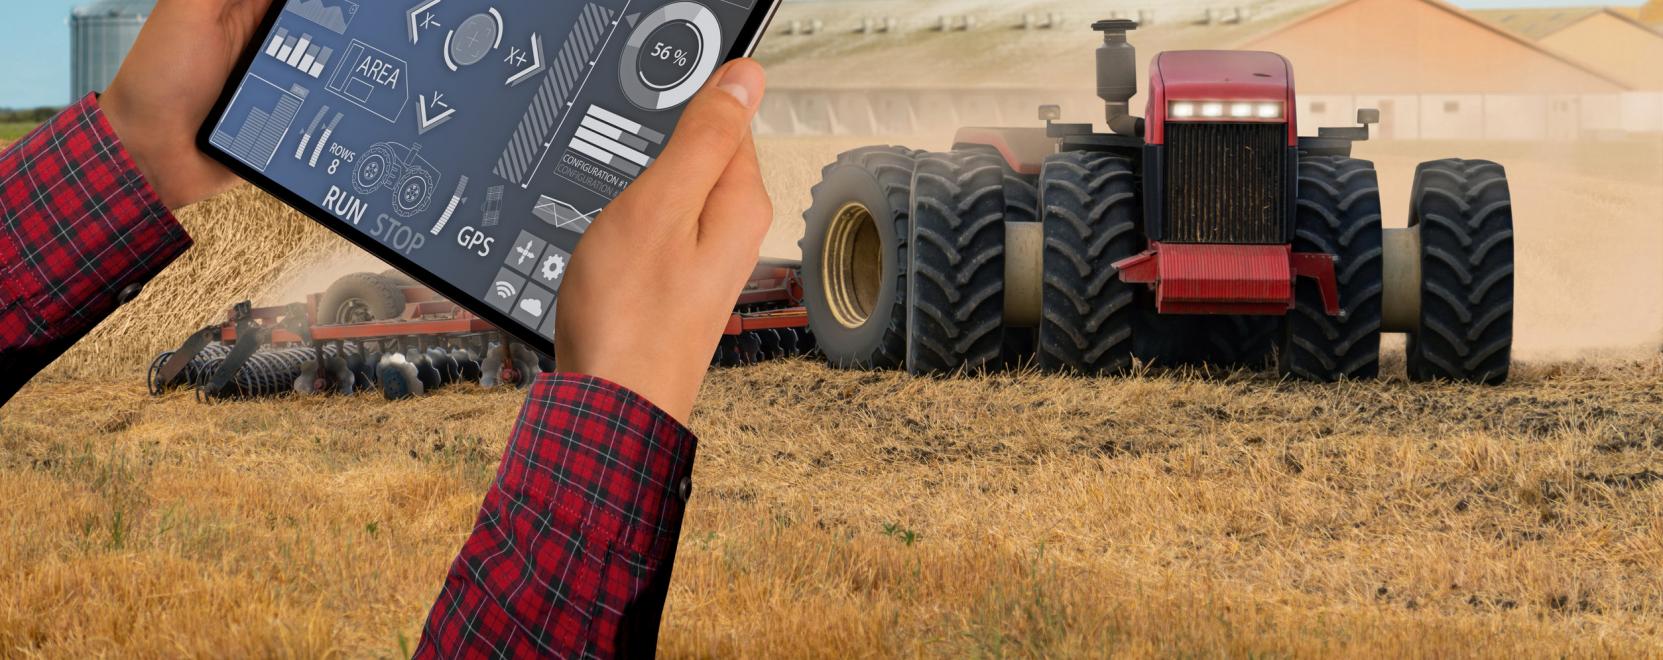 Önvezető járművek: a traktorok beelőzik a személyautókat?